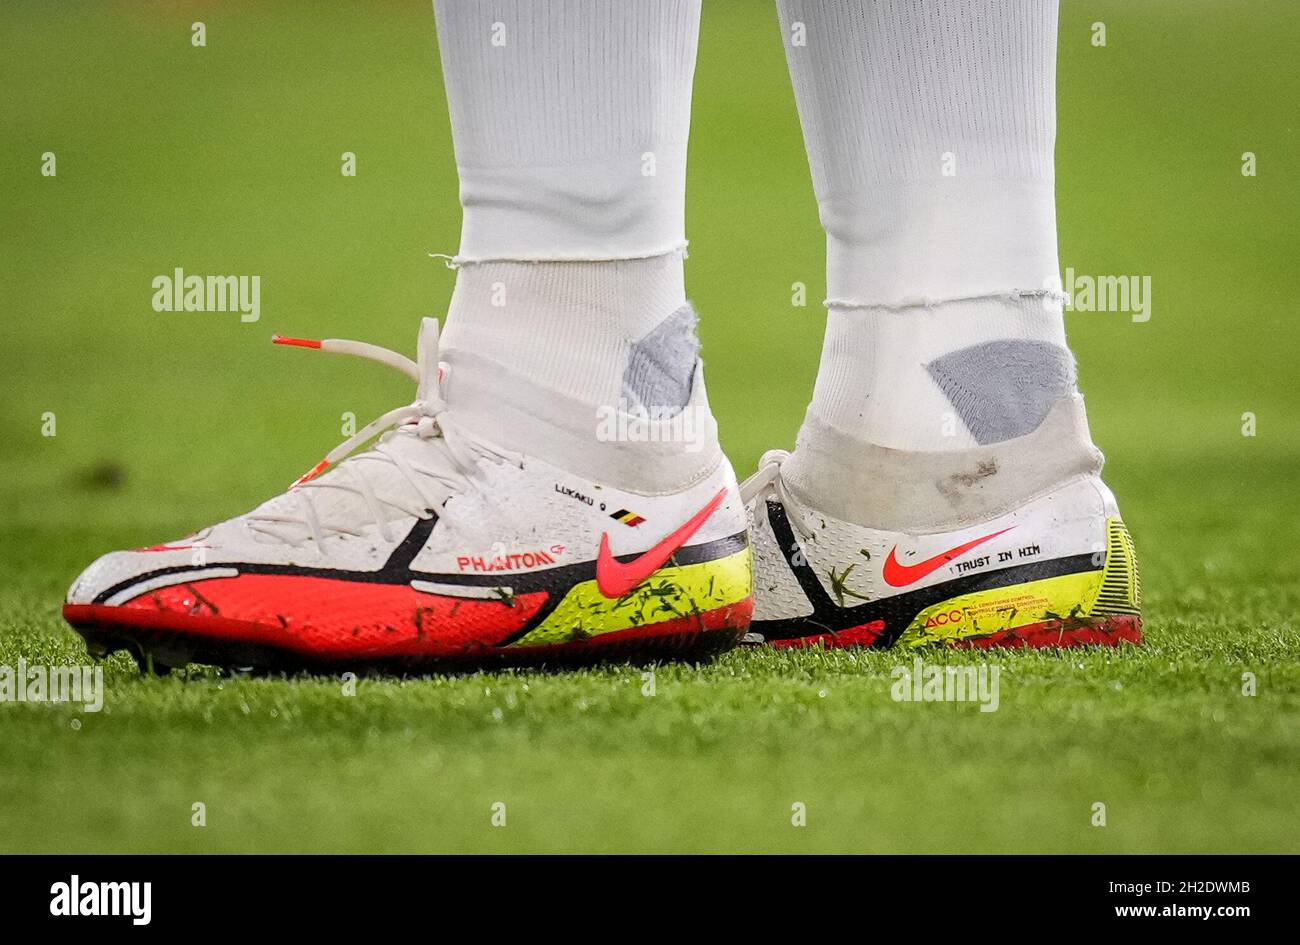 Londres, Royaume-Uni.20 octobre 2021.Les chaussures de football Nike  Phantom personnalisées de Romelu Lukaku de Chelsea affichent ÔTRUST À HIMÕ  lors du match de l'UEFA Champions League entre Chelsea et Malmo au Stamford